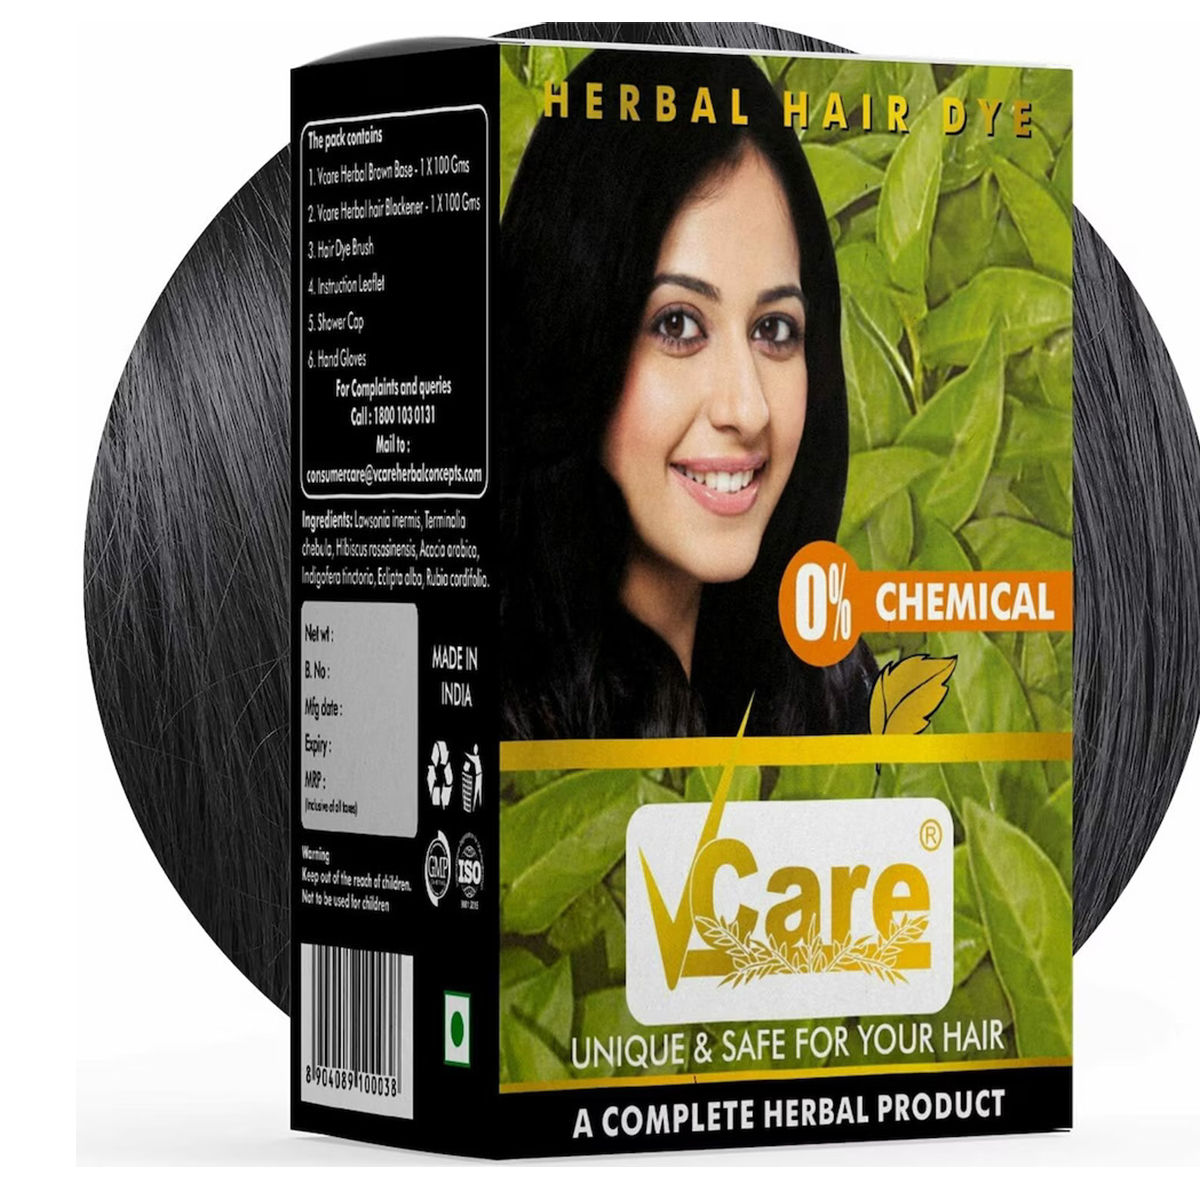 Buy Vcare Herbal Hair Dye, 200 gm Online